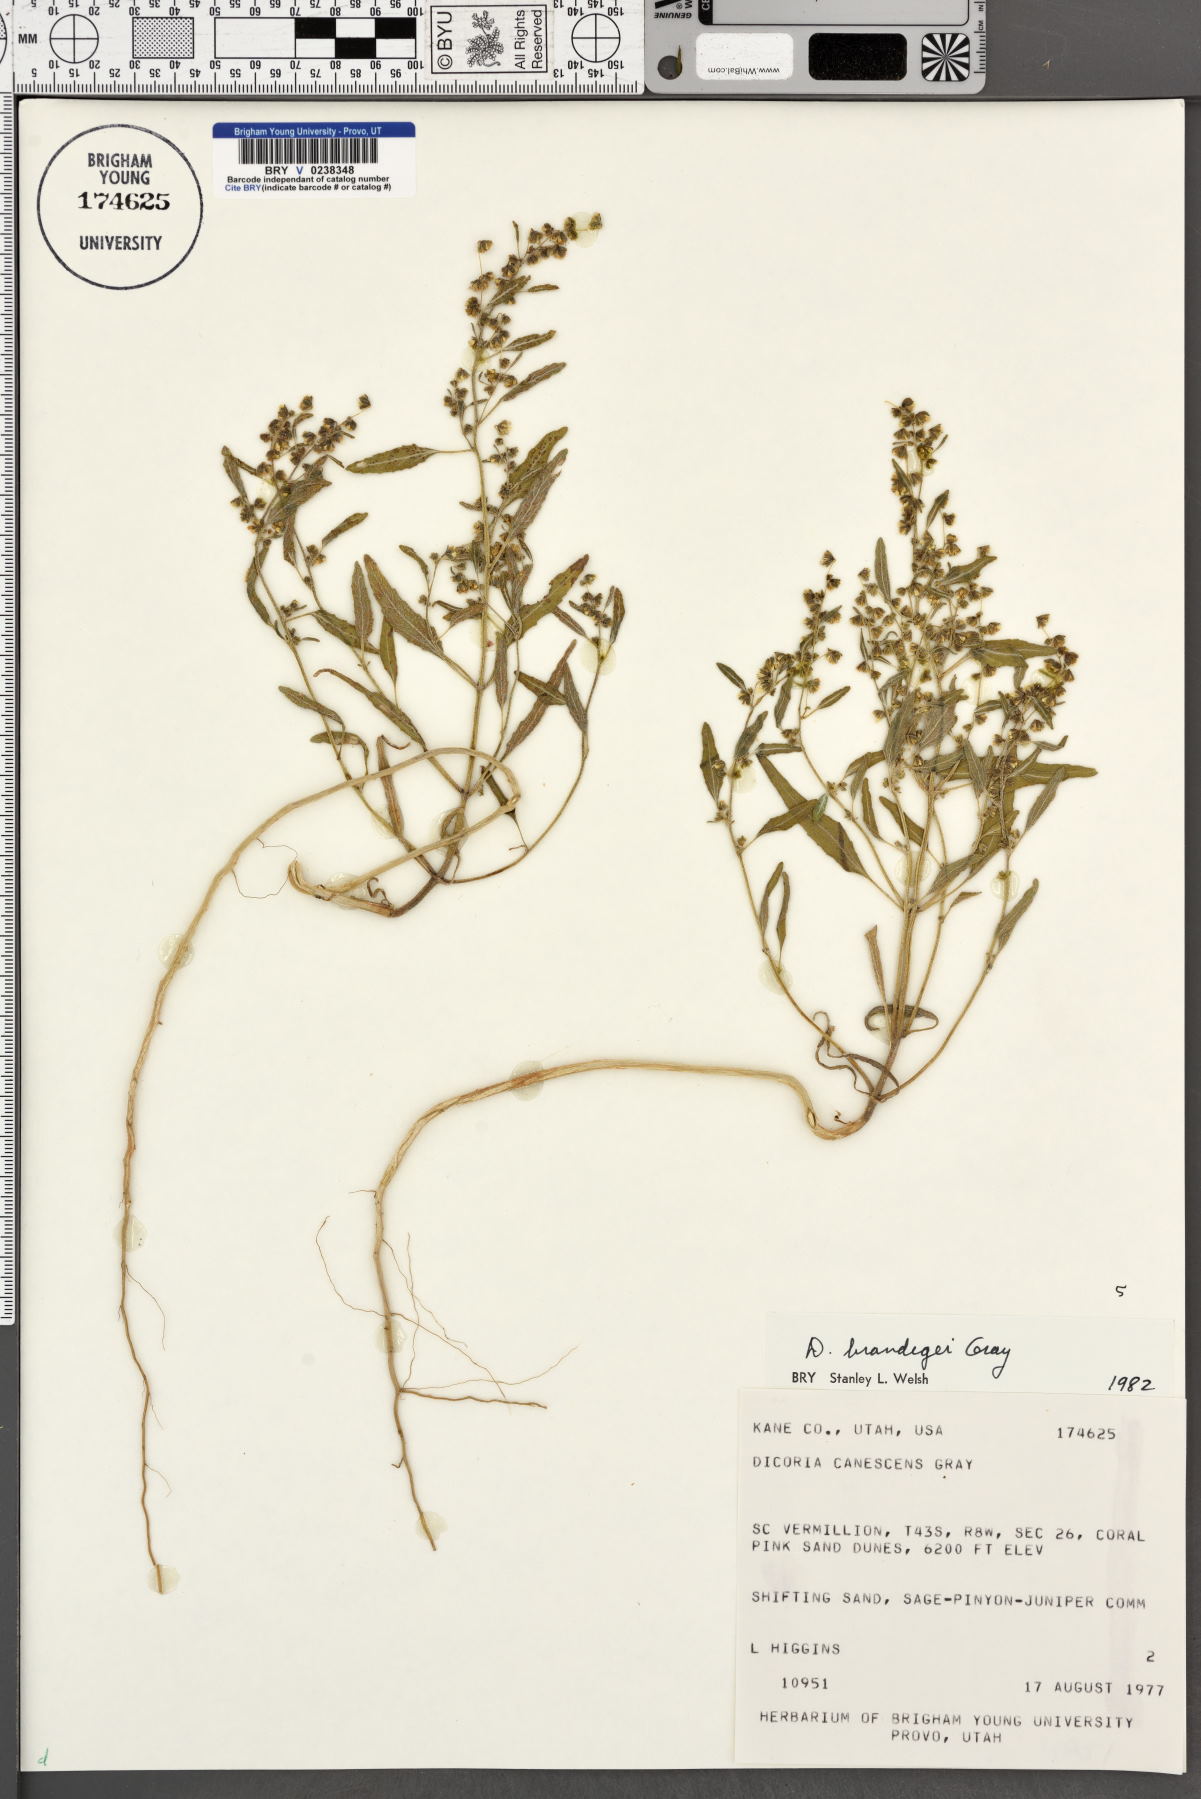 Dicoria canescens subsp. brandegeei image